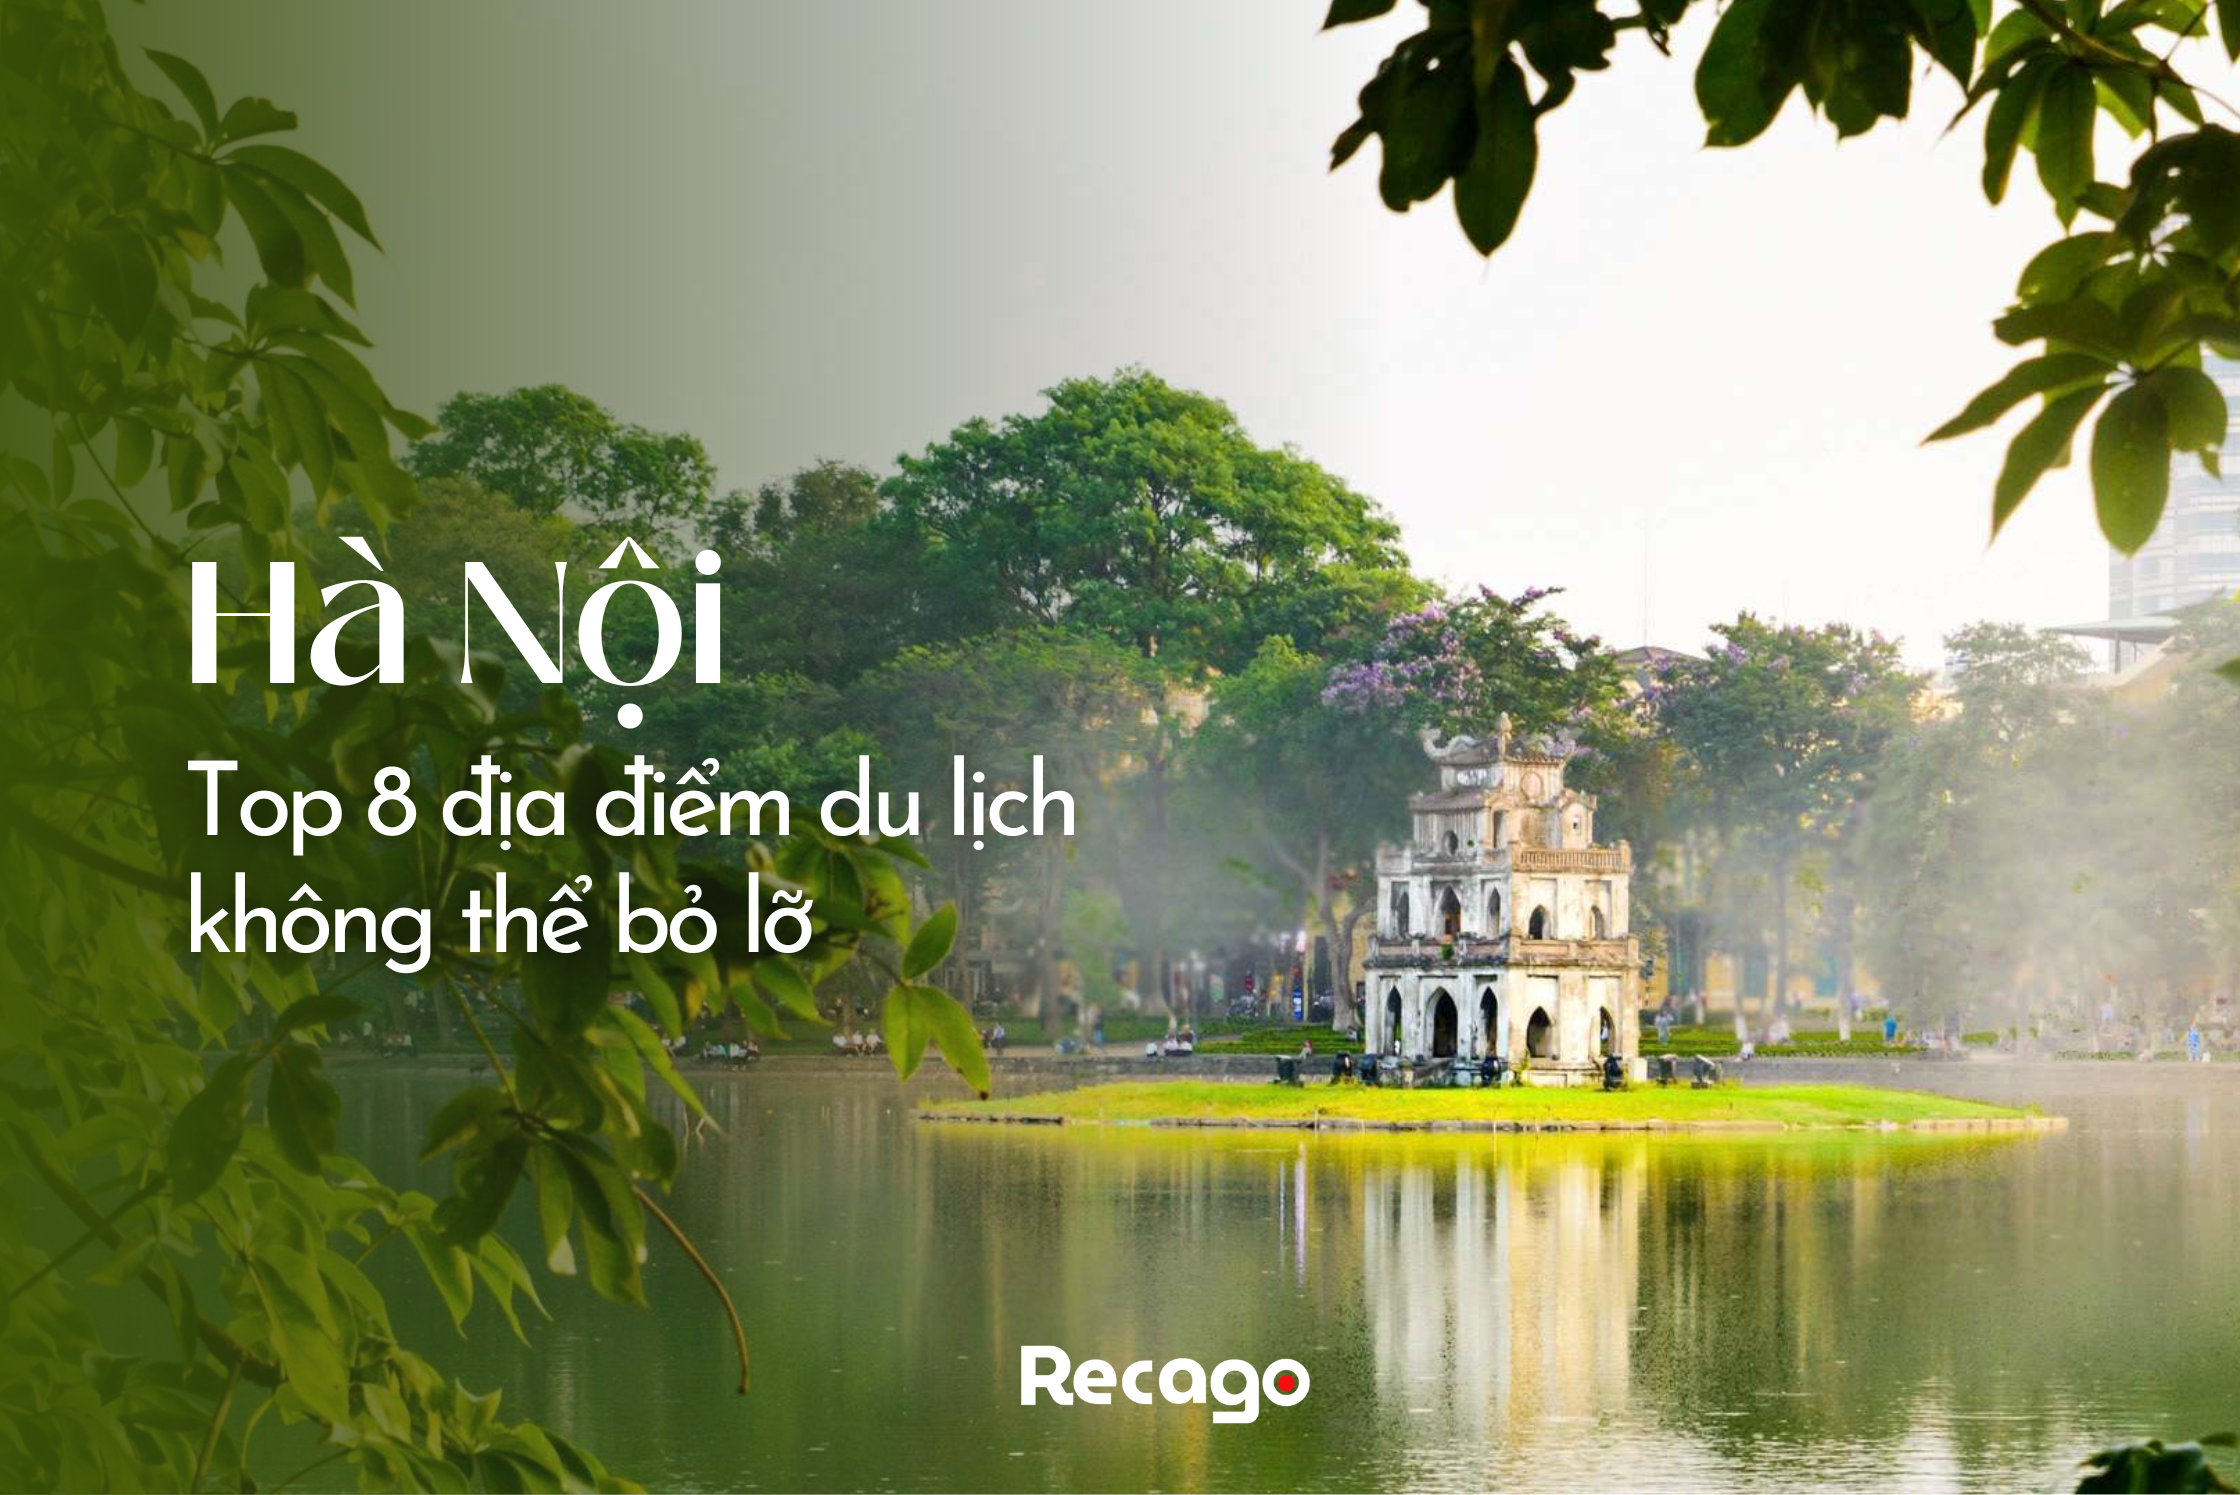 Top 8 địa điểm du lịch Hà Nội không thể bỏ lỡ